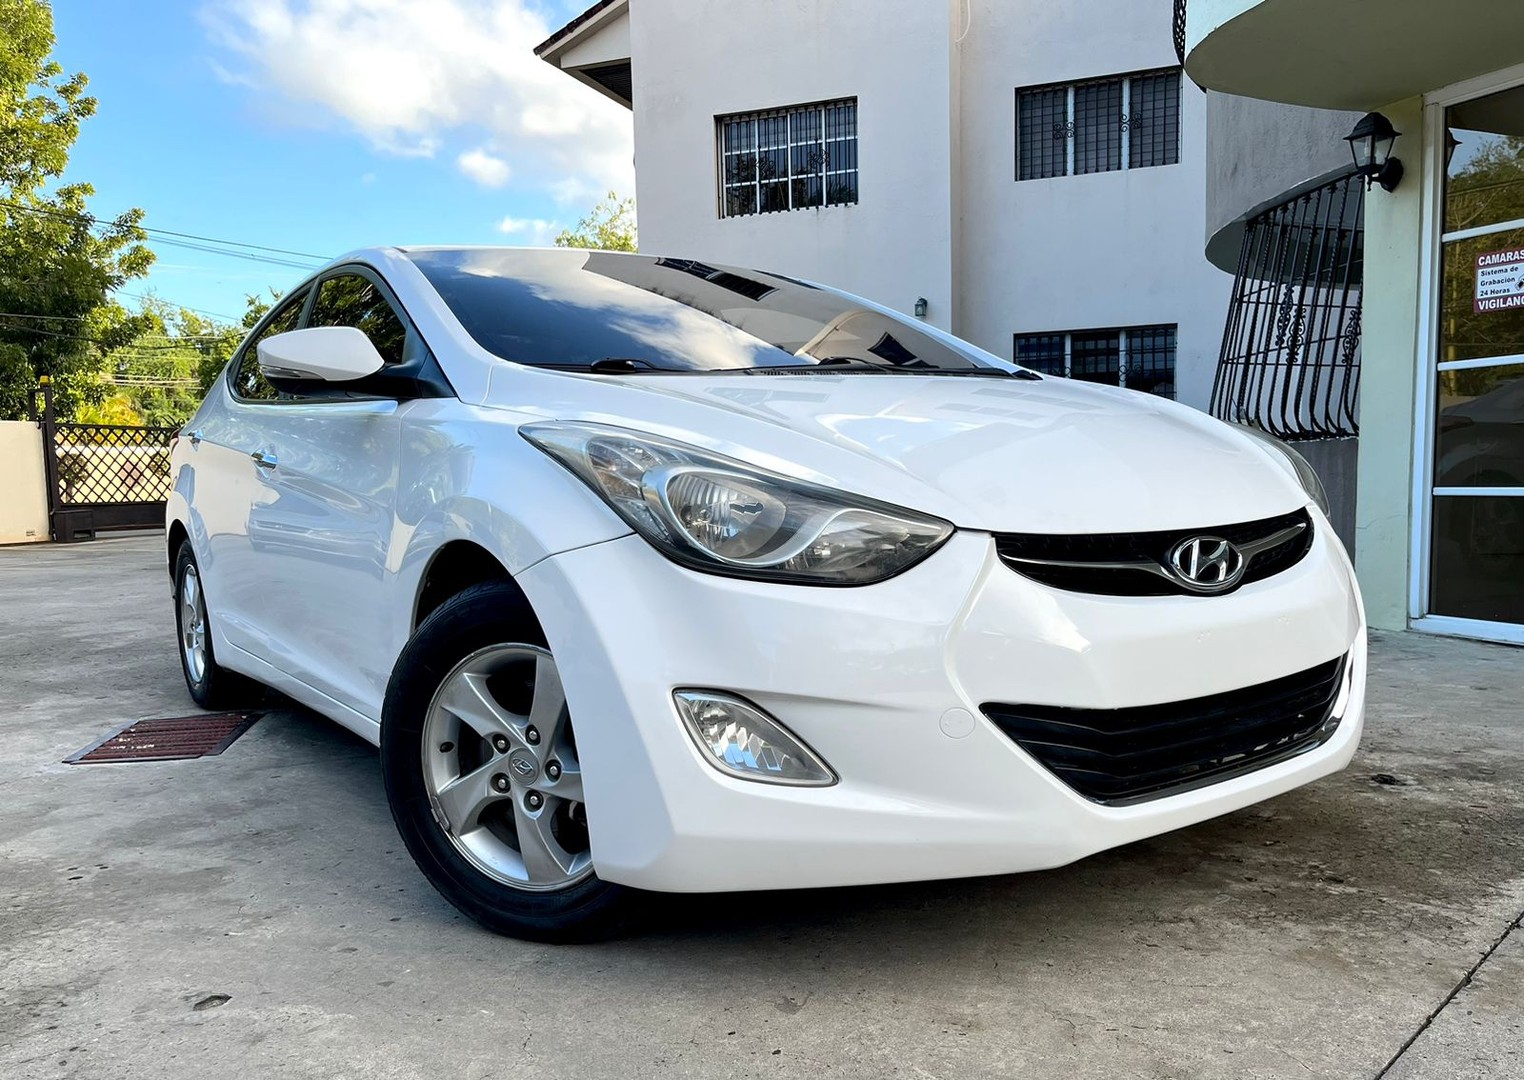 Hyundai Avante 2013: La elección perfecta si buscas un sedán de calidad